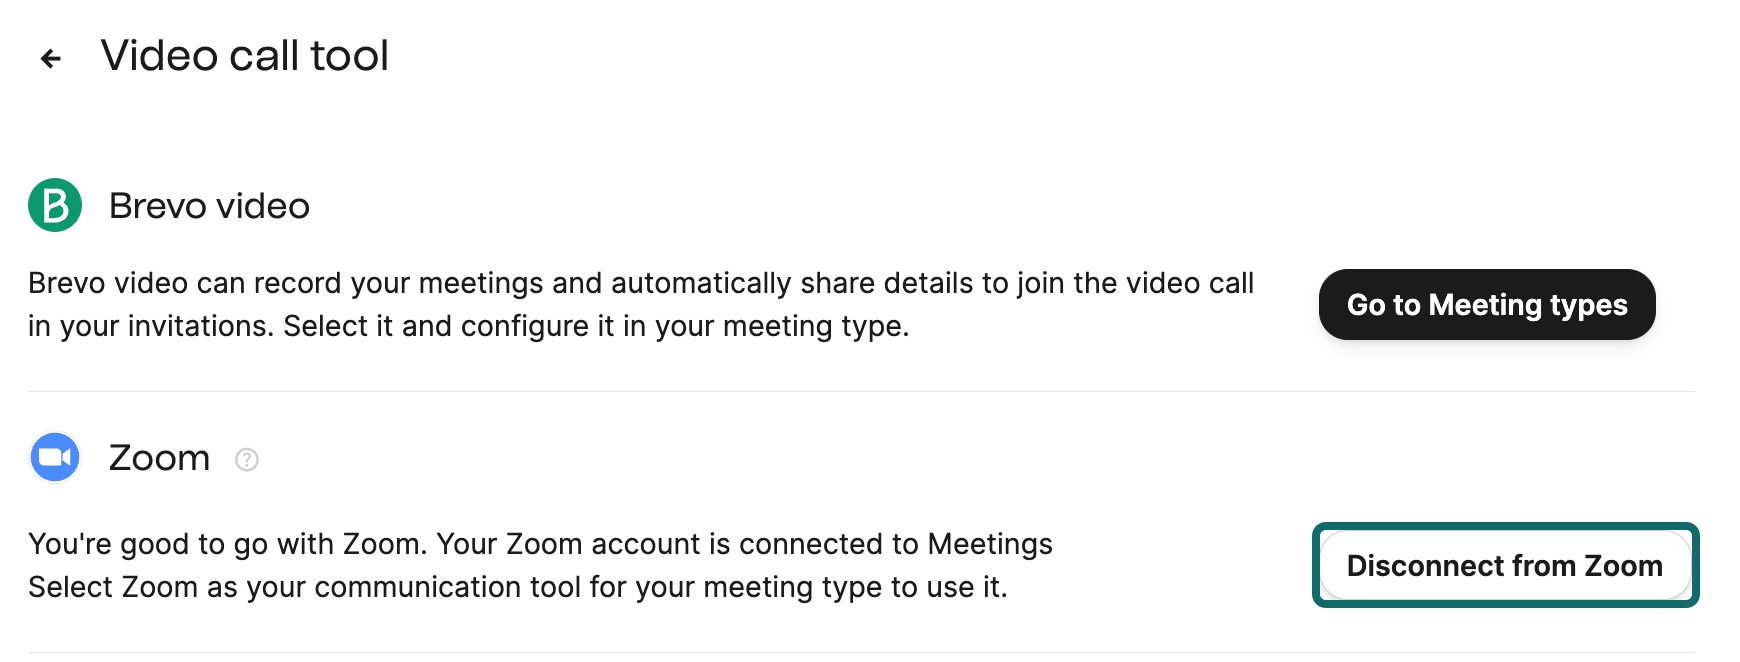 meetings_disconnect-zoom_EN-US.png